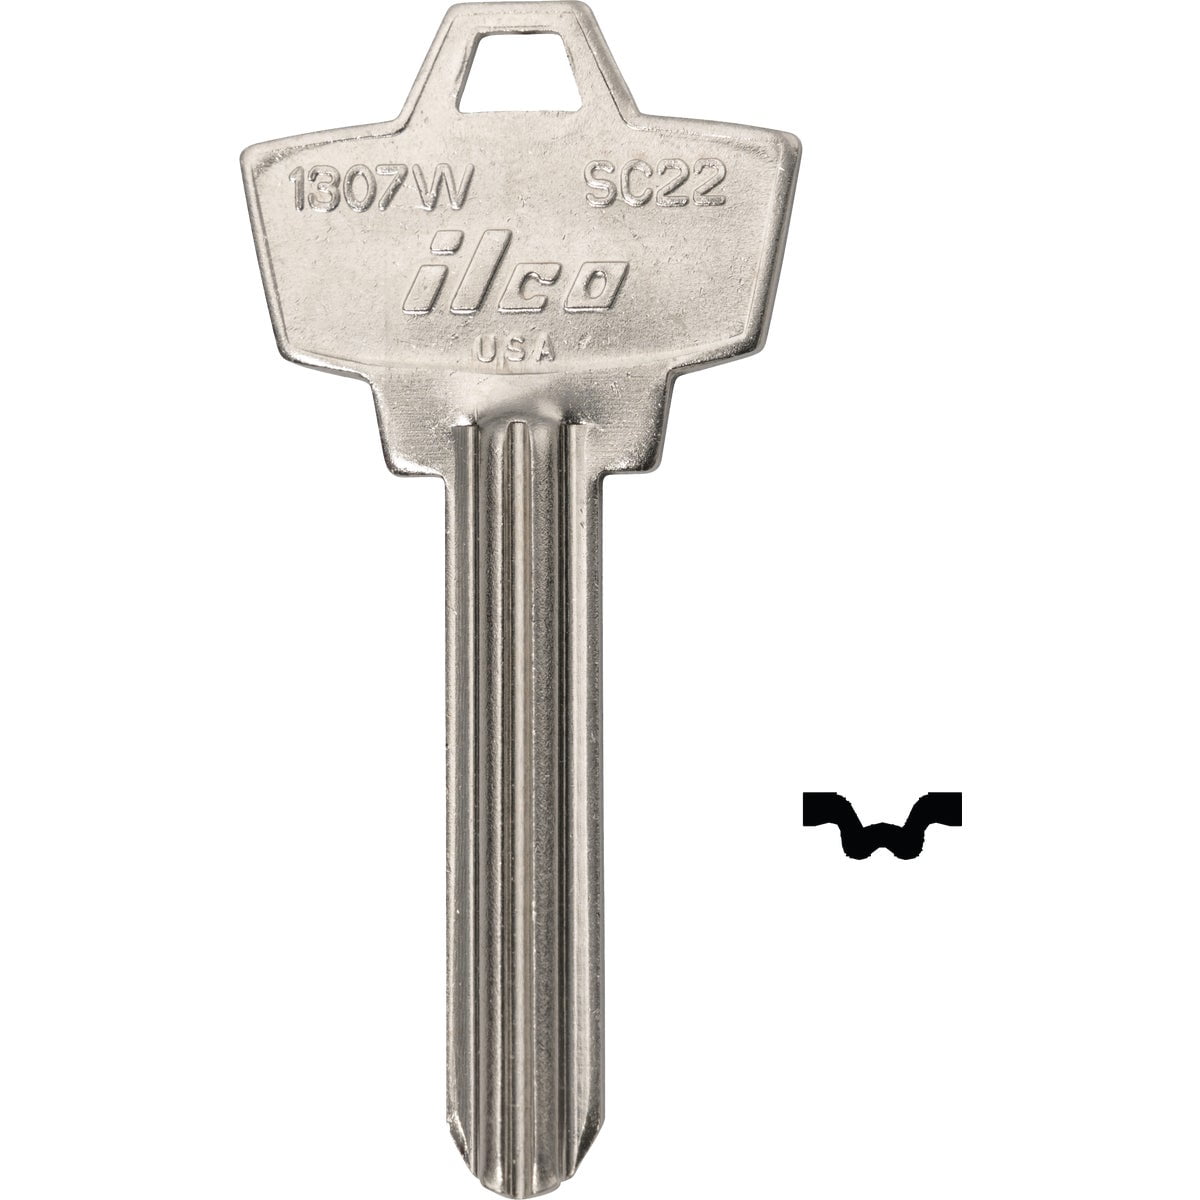 W Lot of 10 Schlage Lock SC22 Ilco 1307W Brass Key Blanks Locksmith 